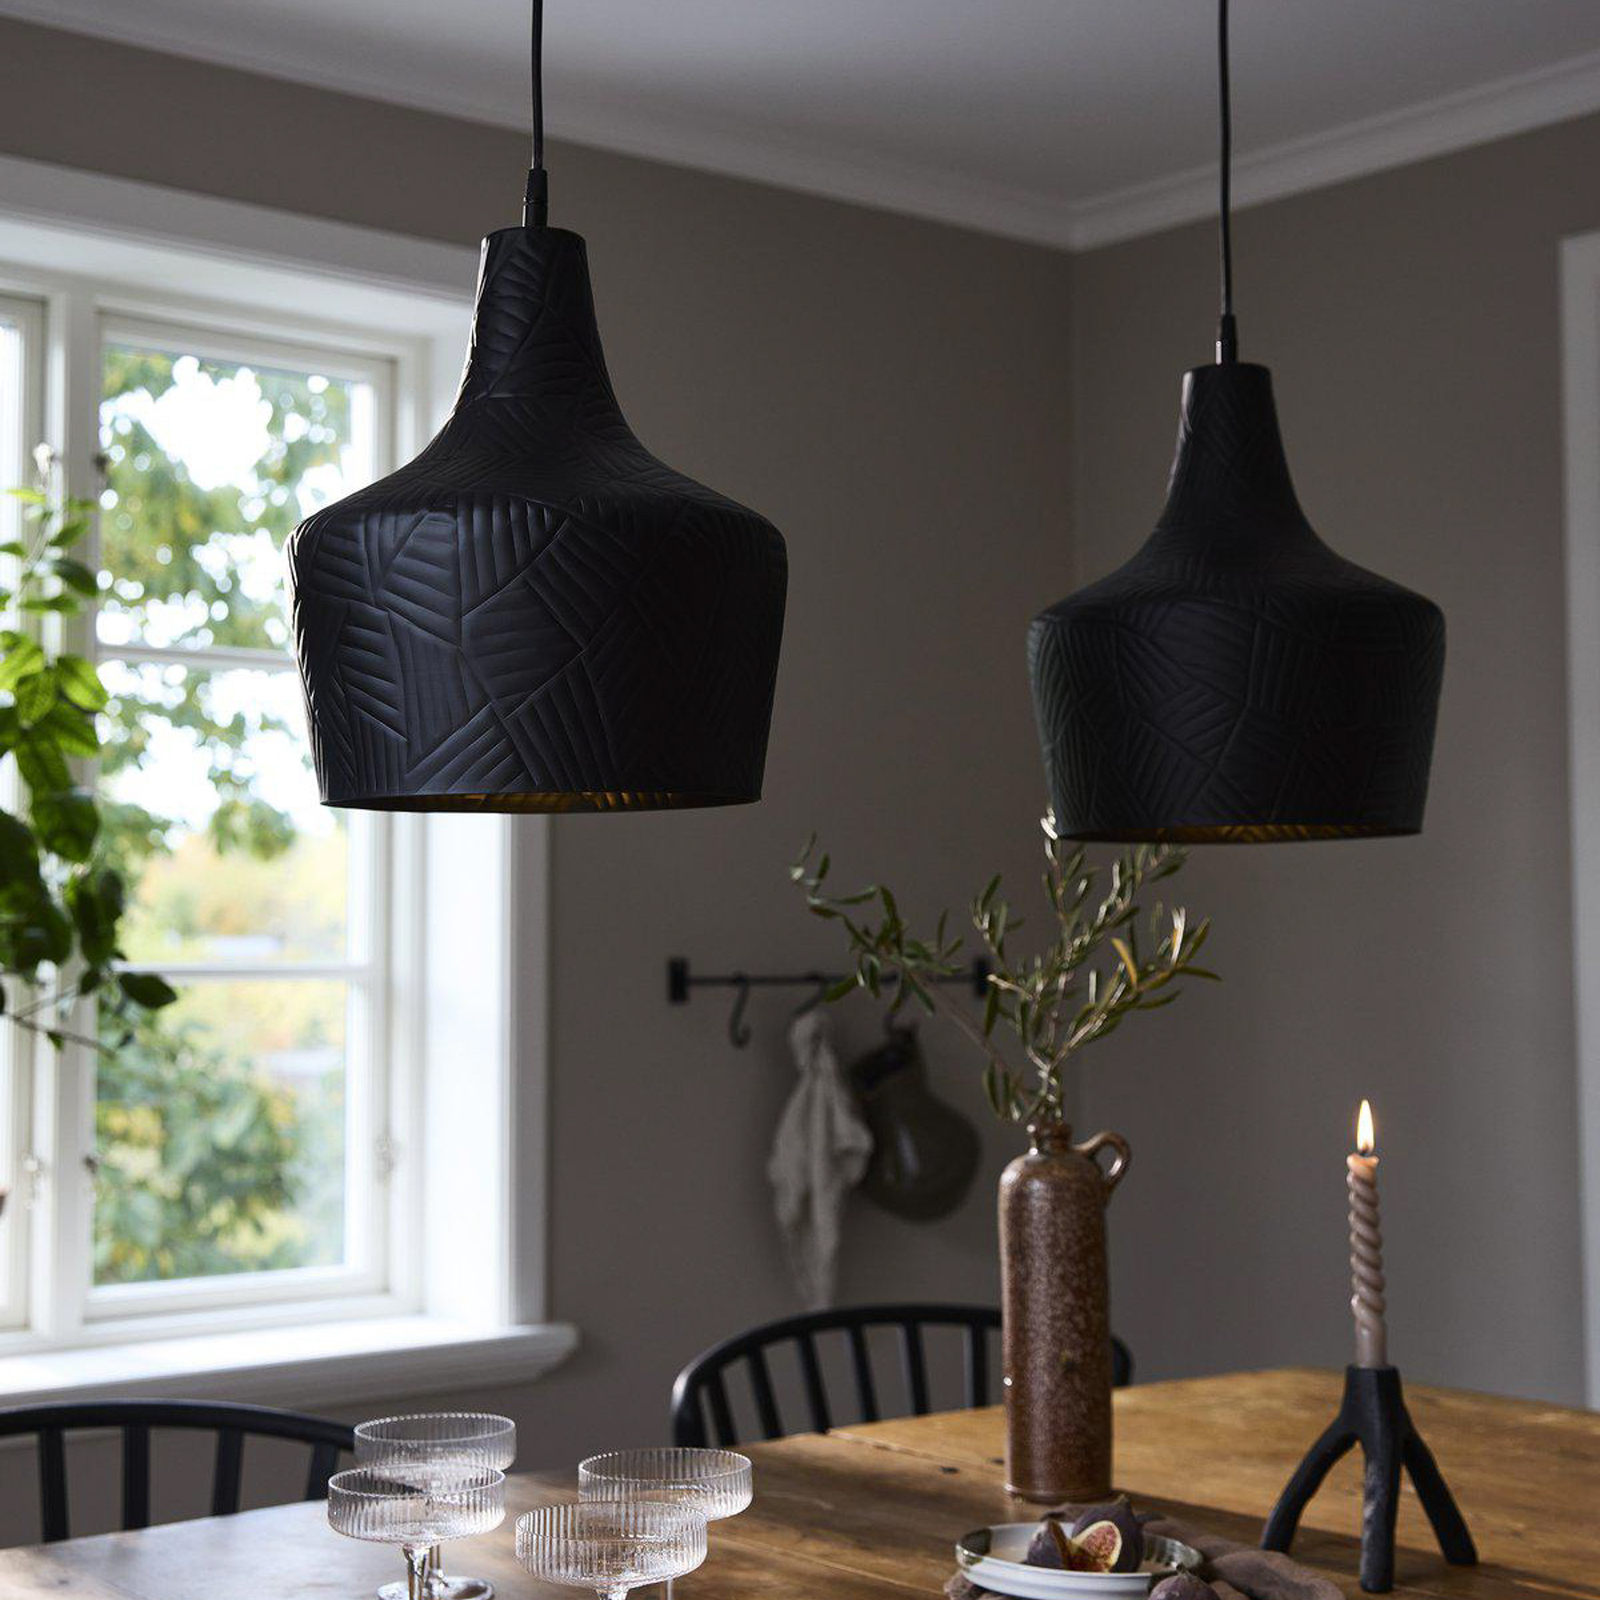 PR Home Ribble hanglamp mat zwart Ø 25cm